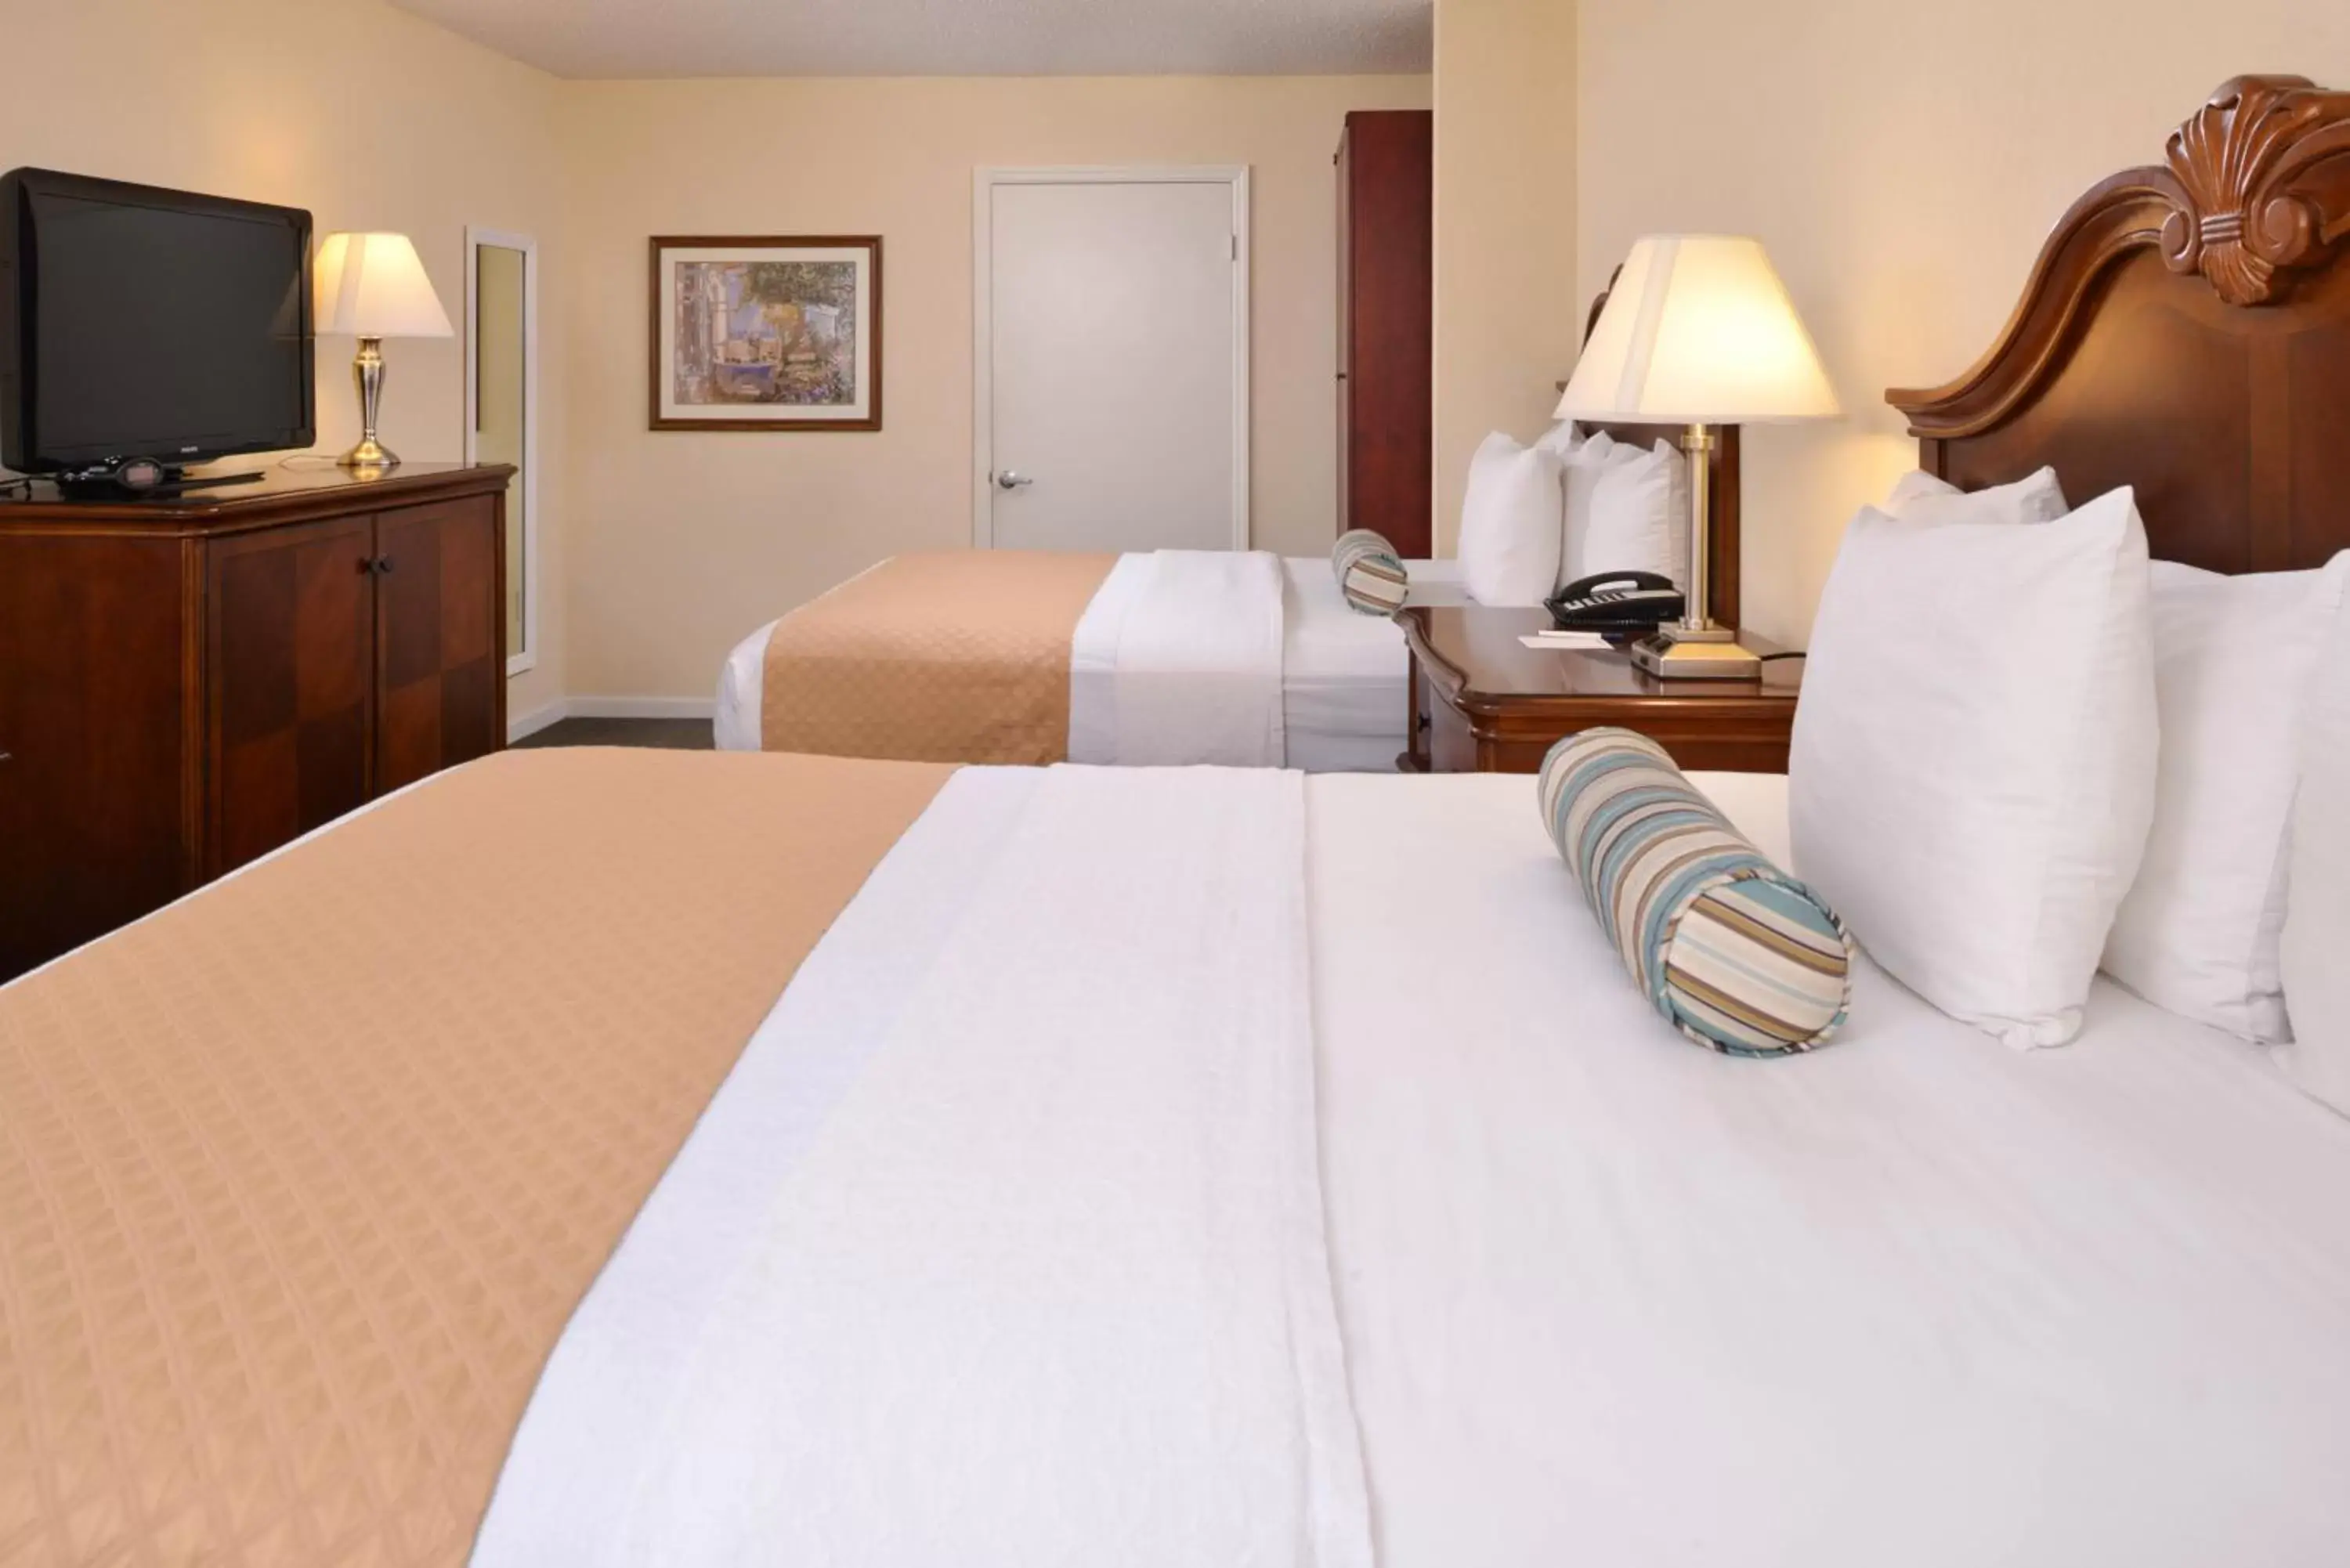 Bed, Room Photo in Best Western PLUS Santee Inn